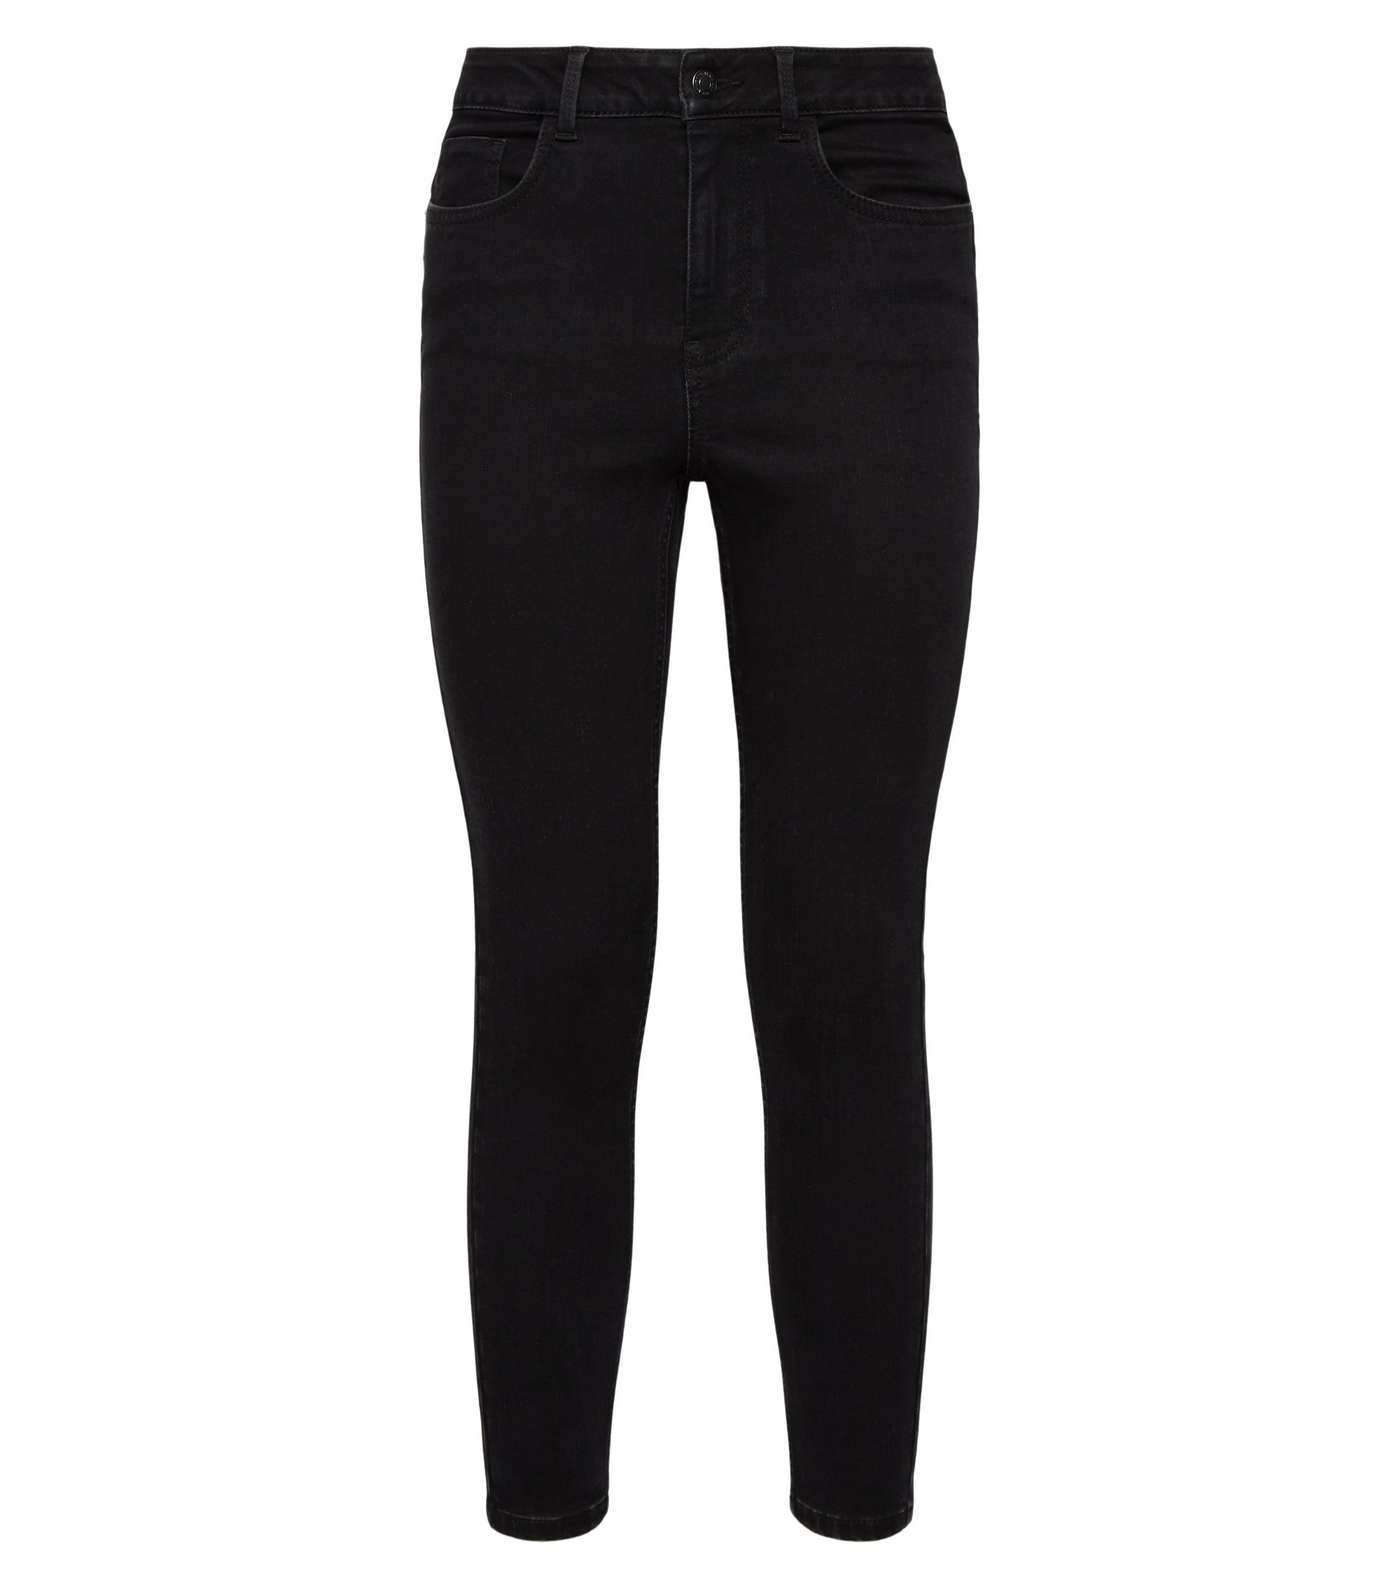 Petite Black Lift & Shape Jenna Skinny Jeans Image 5